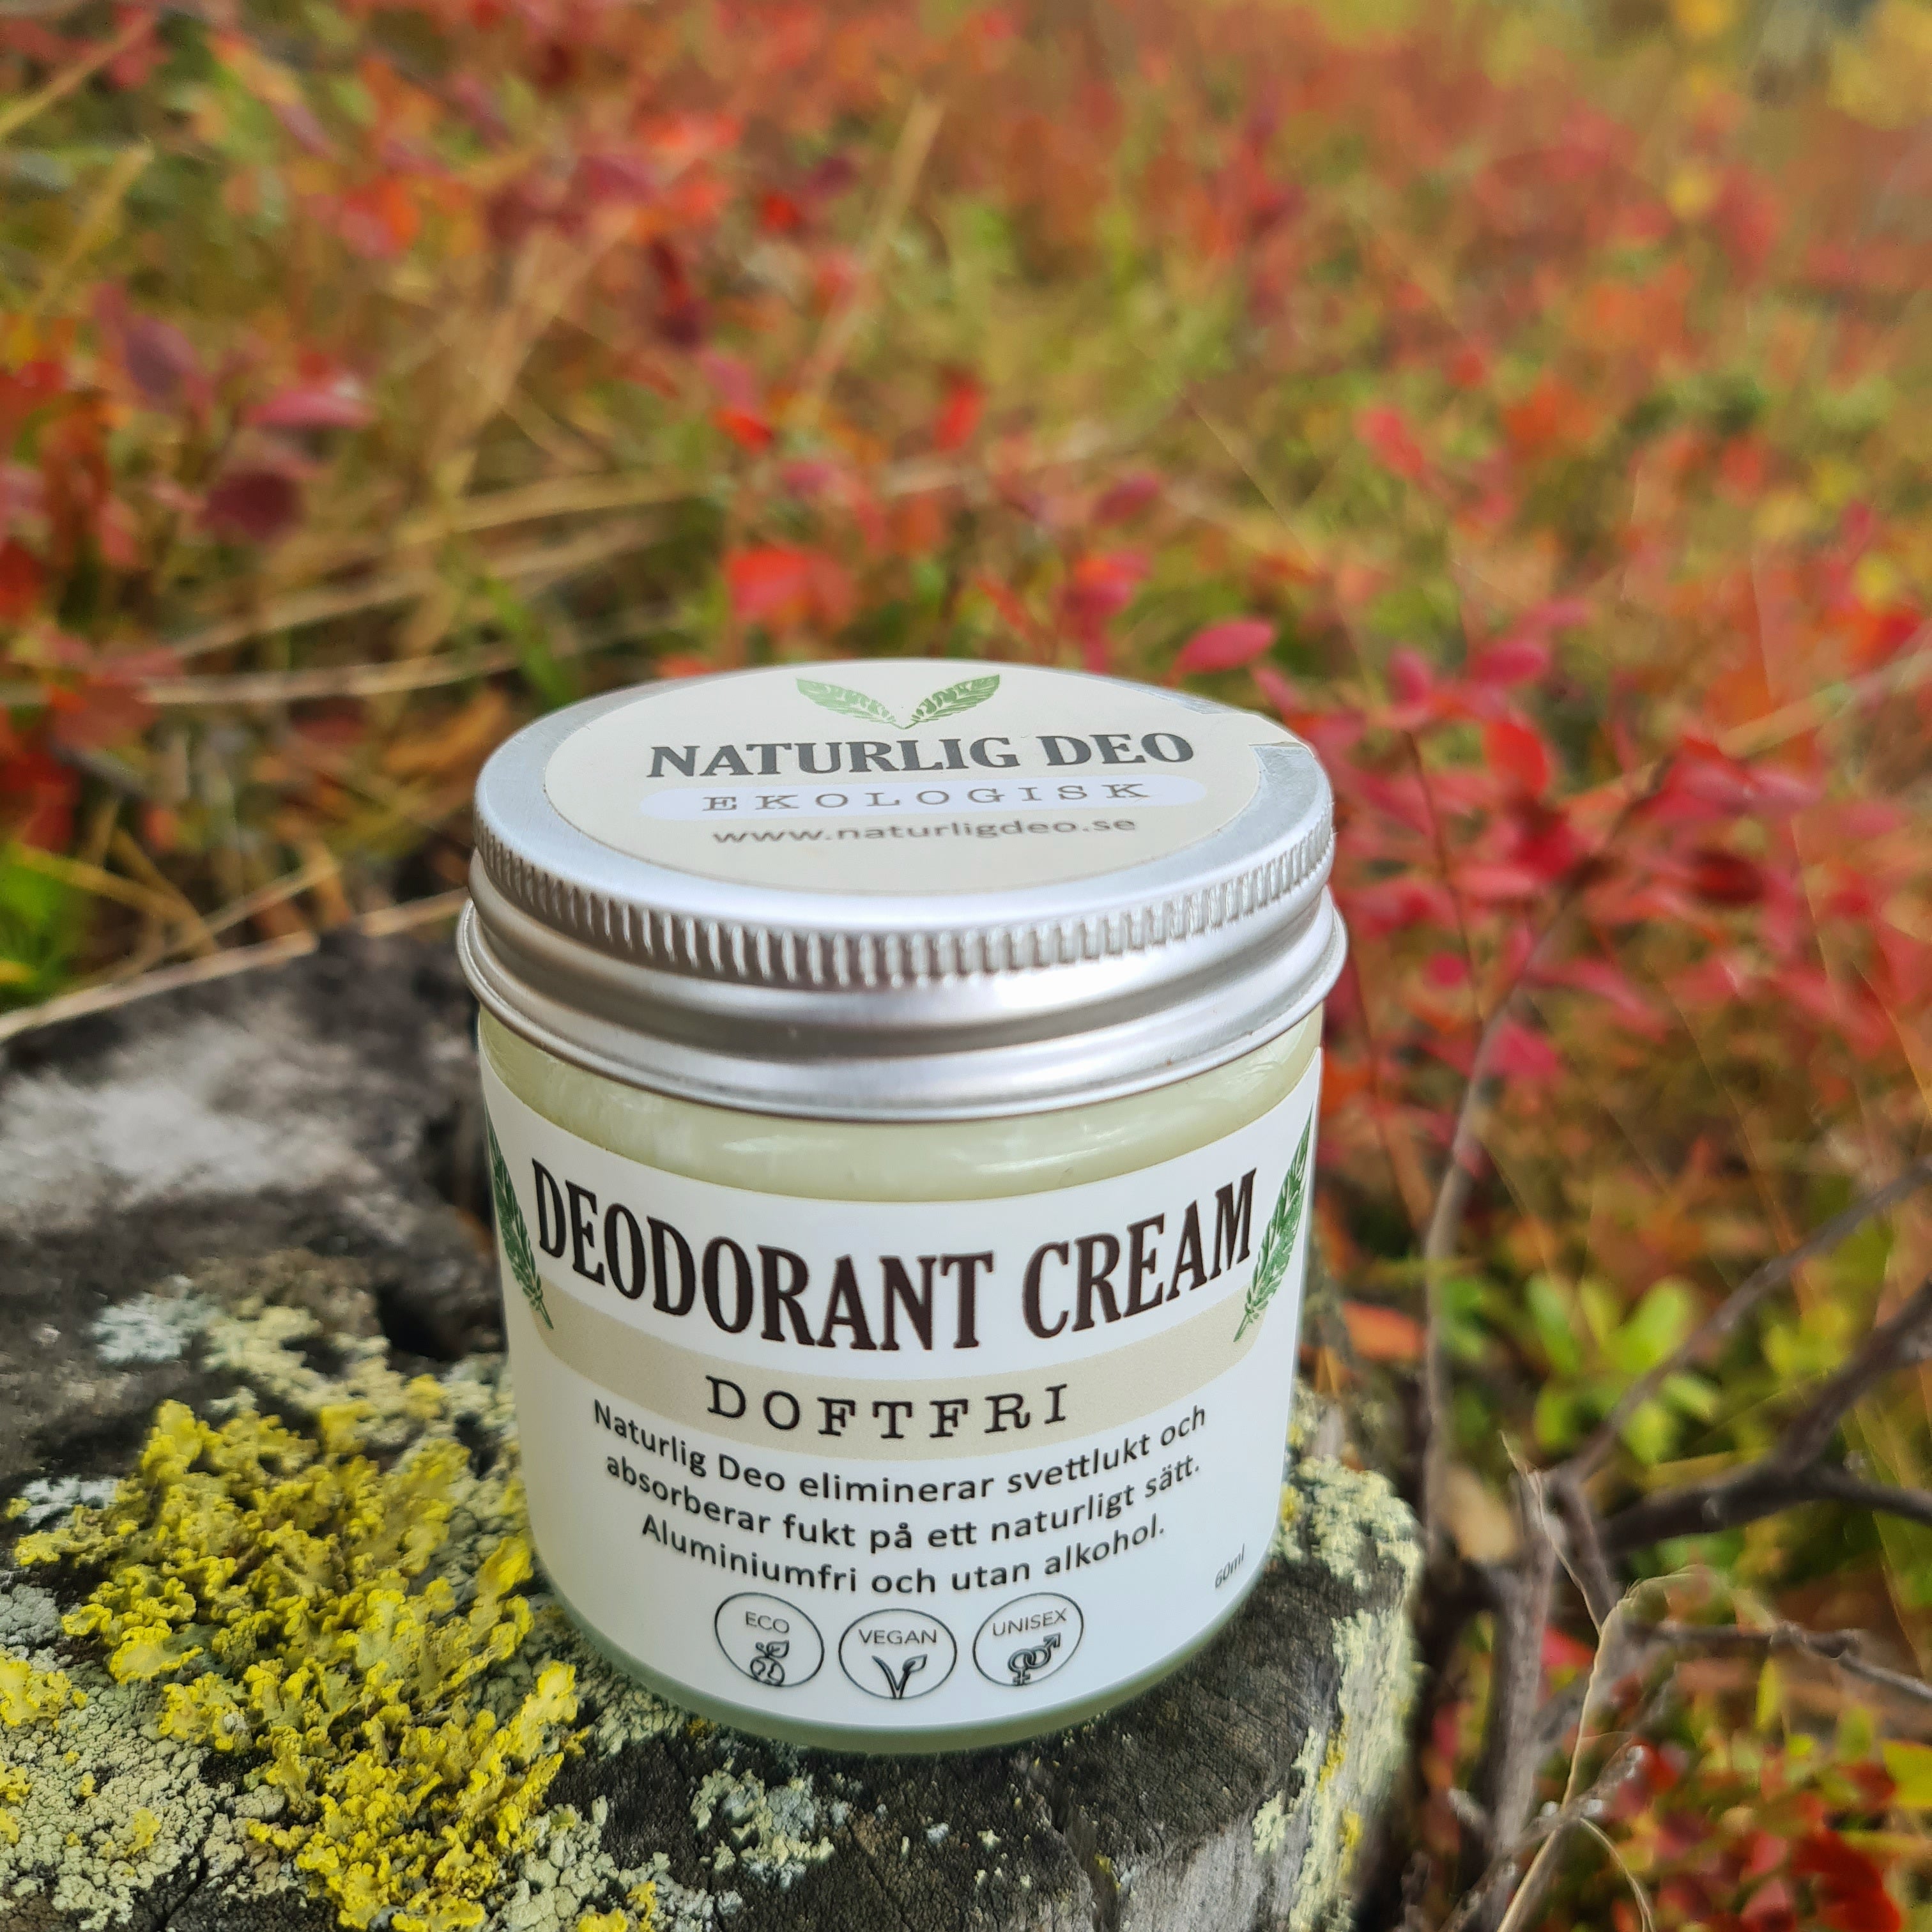 Naturlig Deo - Ekologisk Deodorant Cream 15ml Doftfri - Ekostuff.se